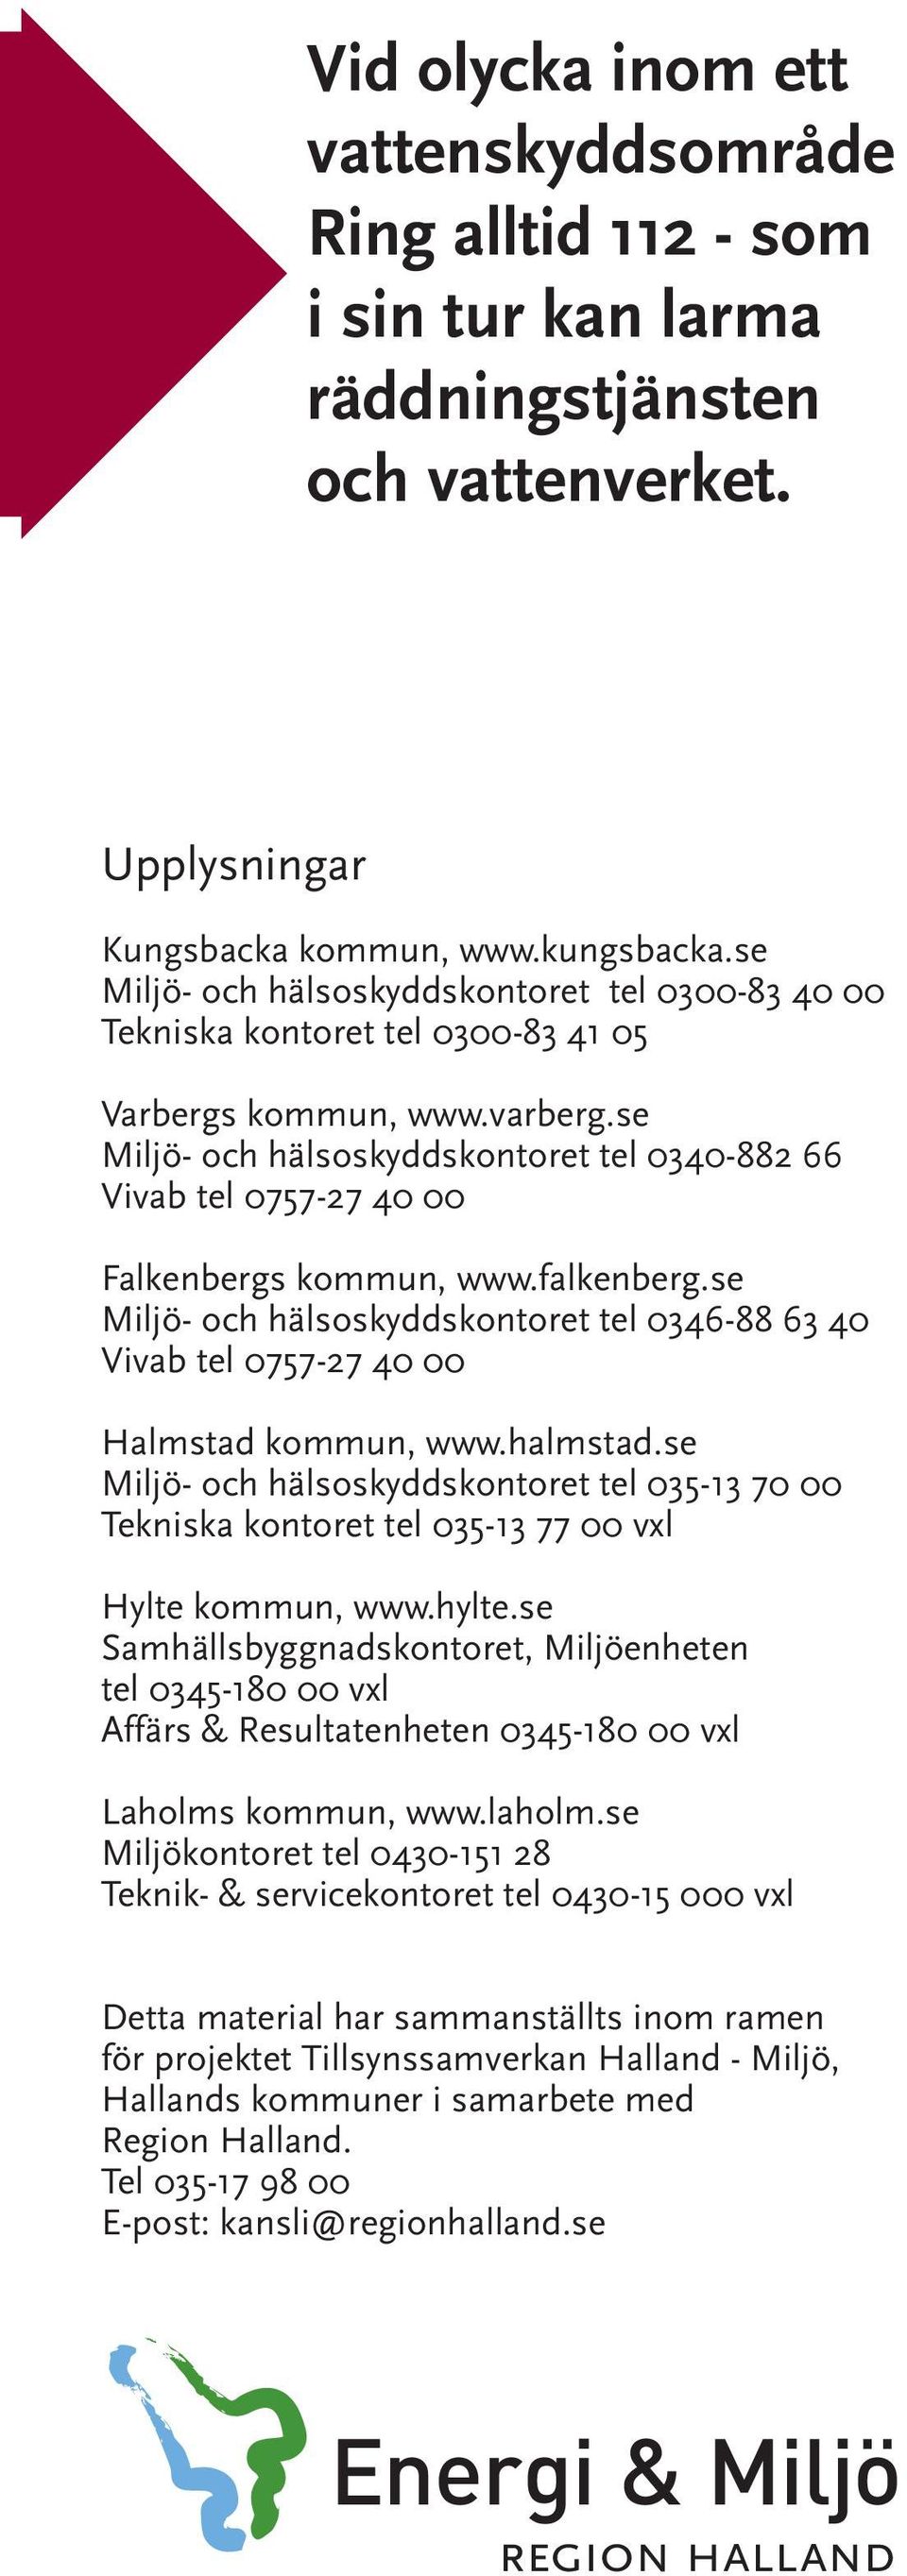 se Miljö- och hälsoskyddskontoret tel 0340-882 66 Vivab tel 0757-27 40 00 Falkenbergs kommun, www.falkenberg.